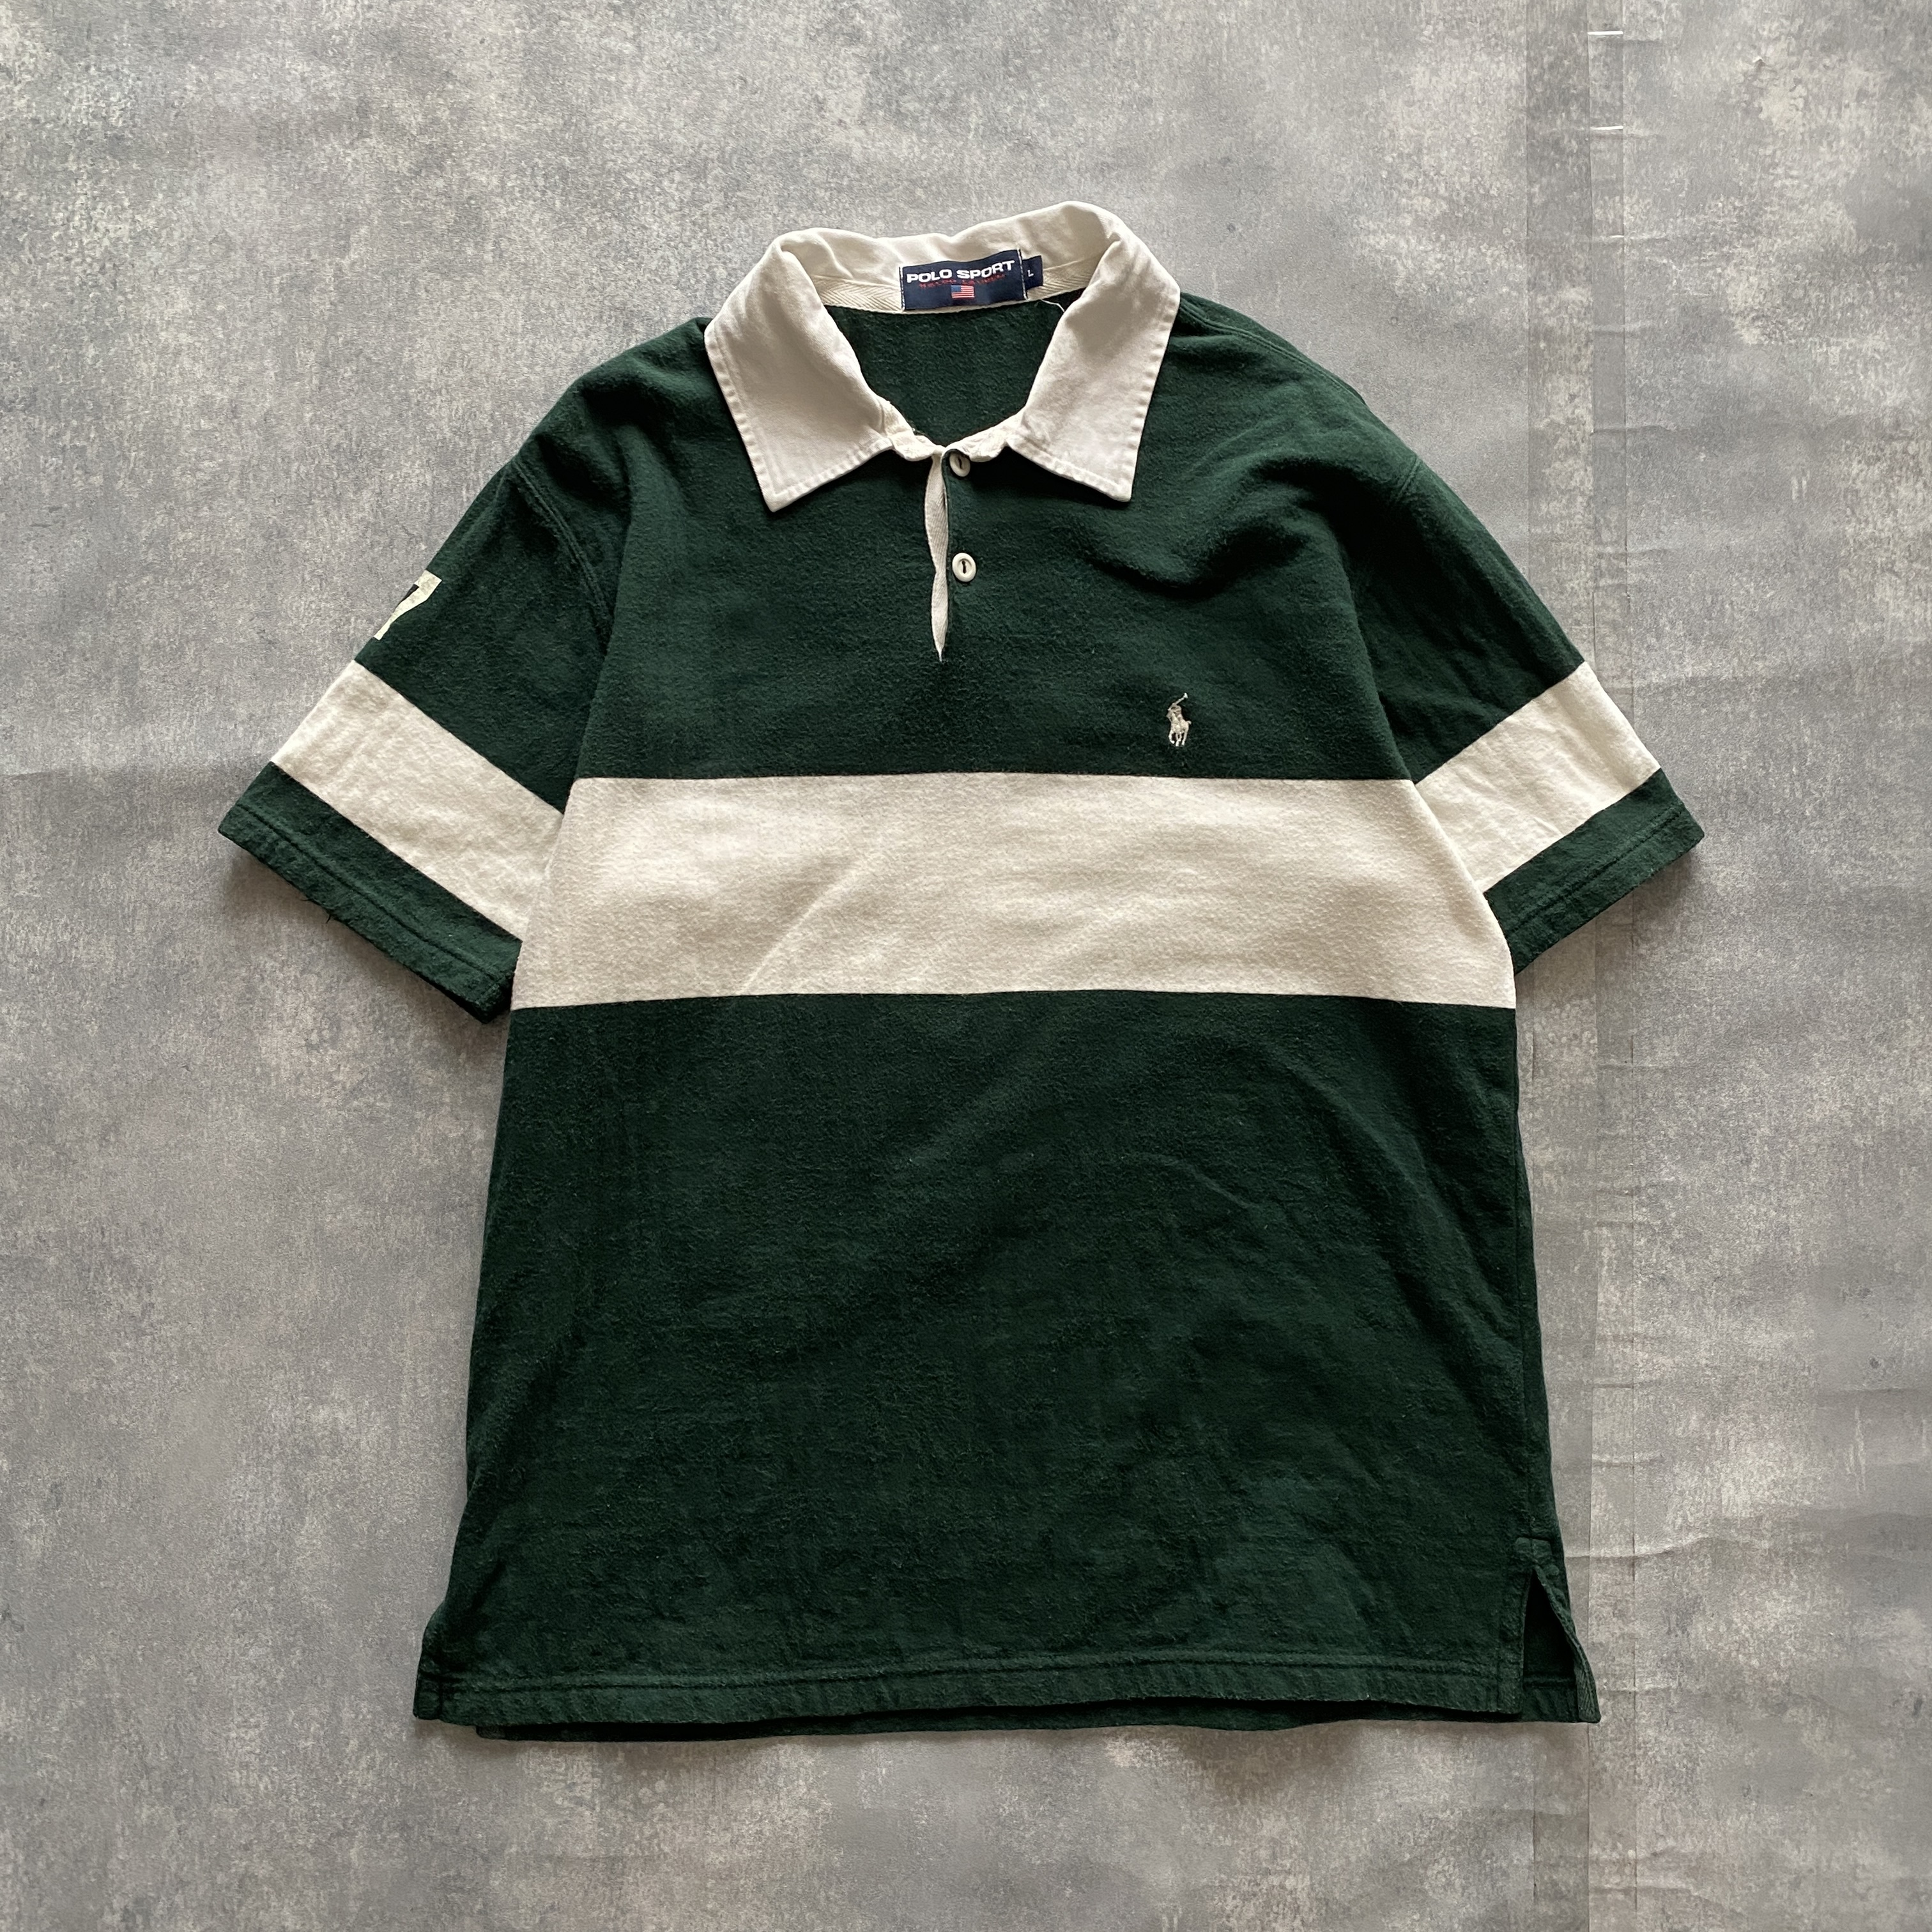 366【人気モデル】ラルフローレン 刺繍ロゴ ワンポイント ラガーシャツ 